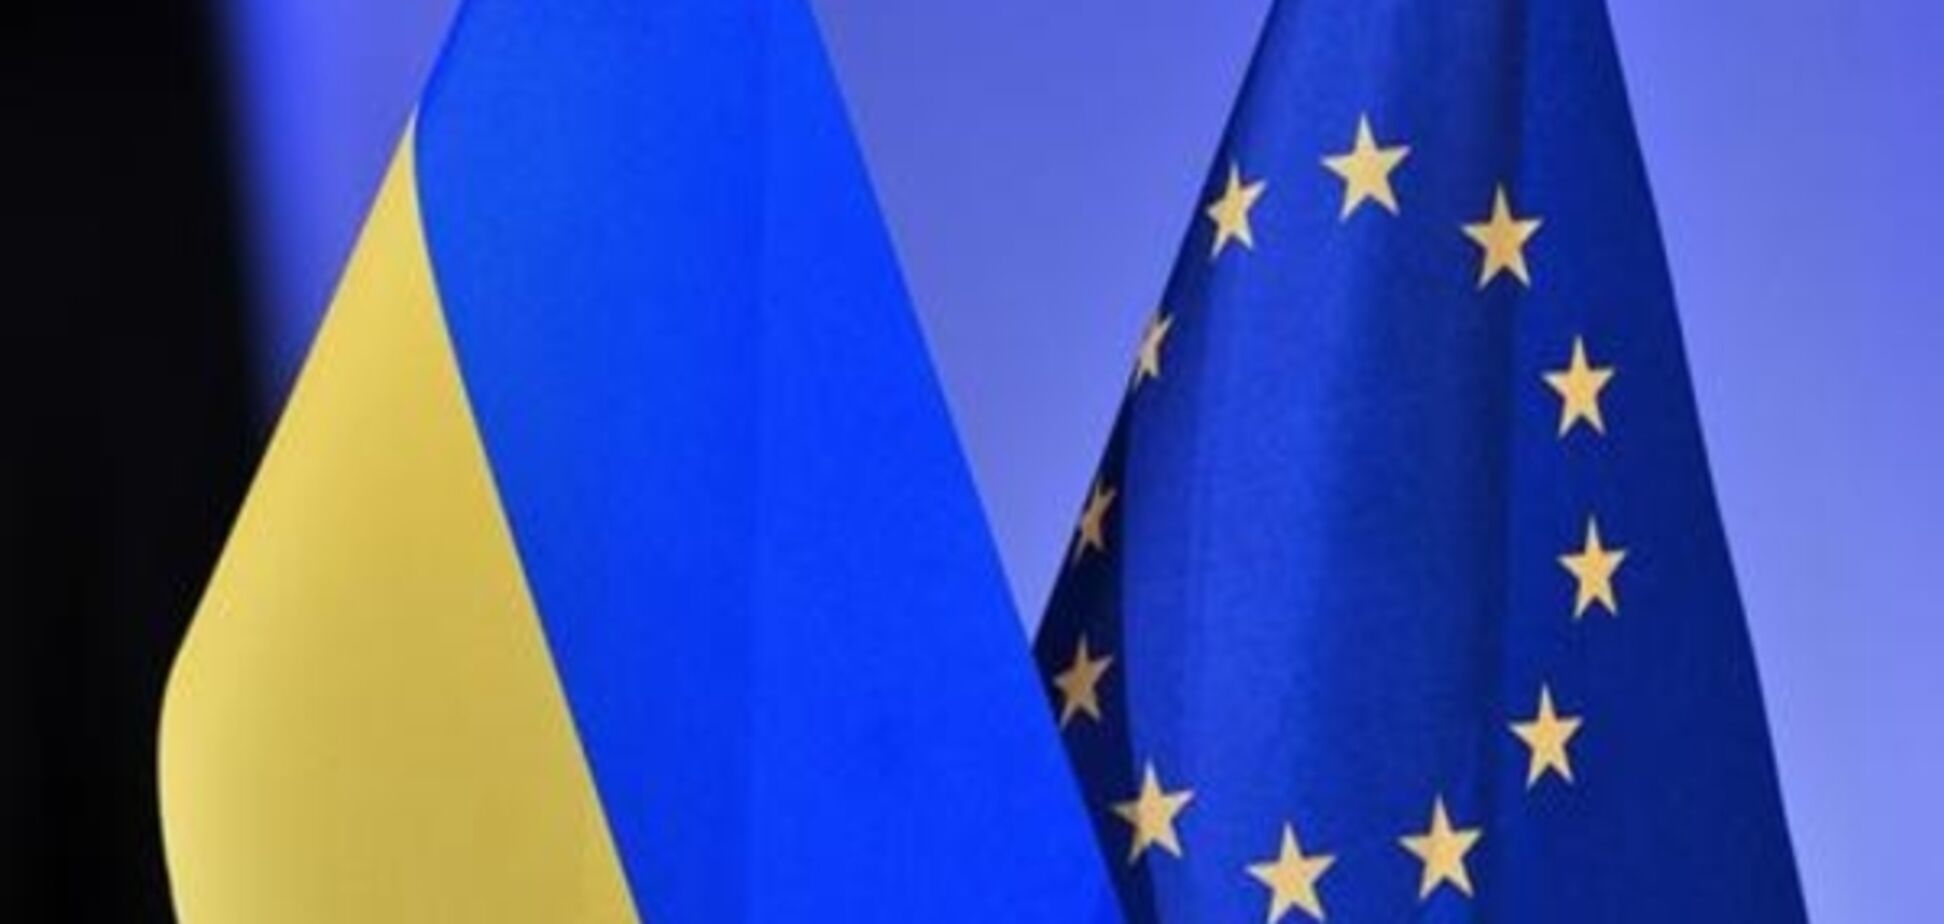 Безвізовий режим та санкції щодо Росії - головні теми саміту Україна-ЄС